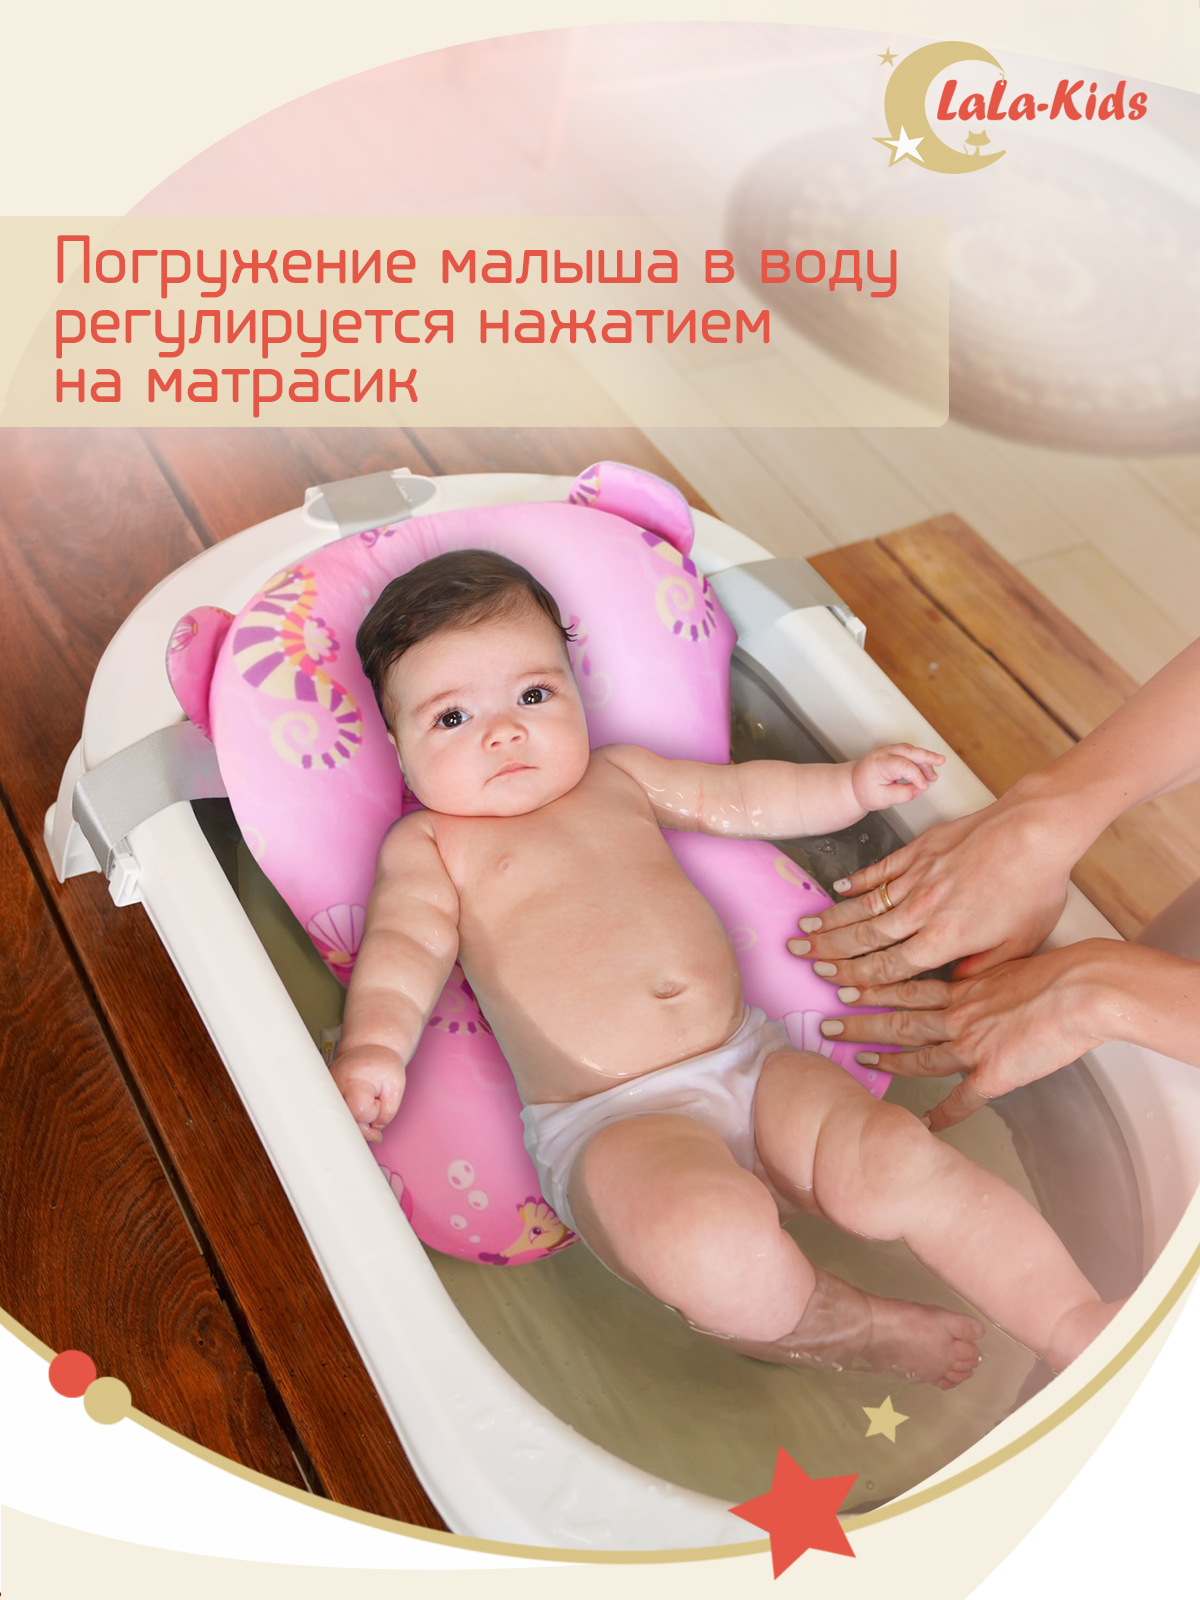 Матрасик Морские коньки LaLa-Kids для купания новорожденных - фото 10